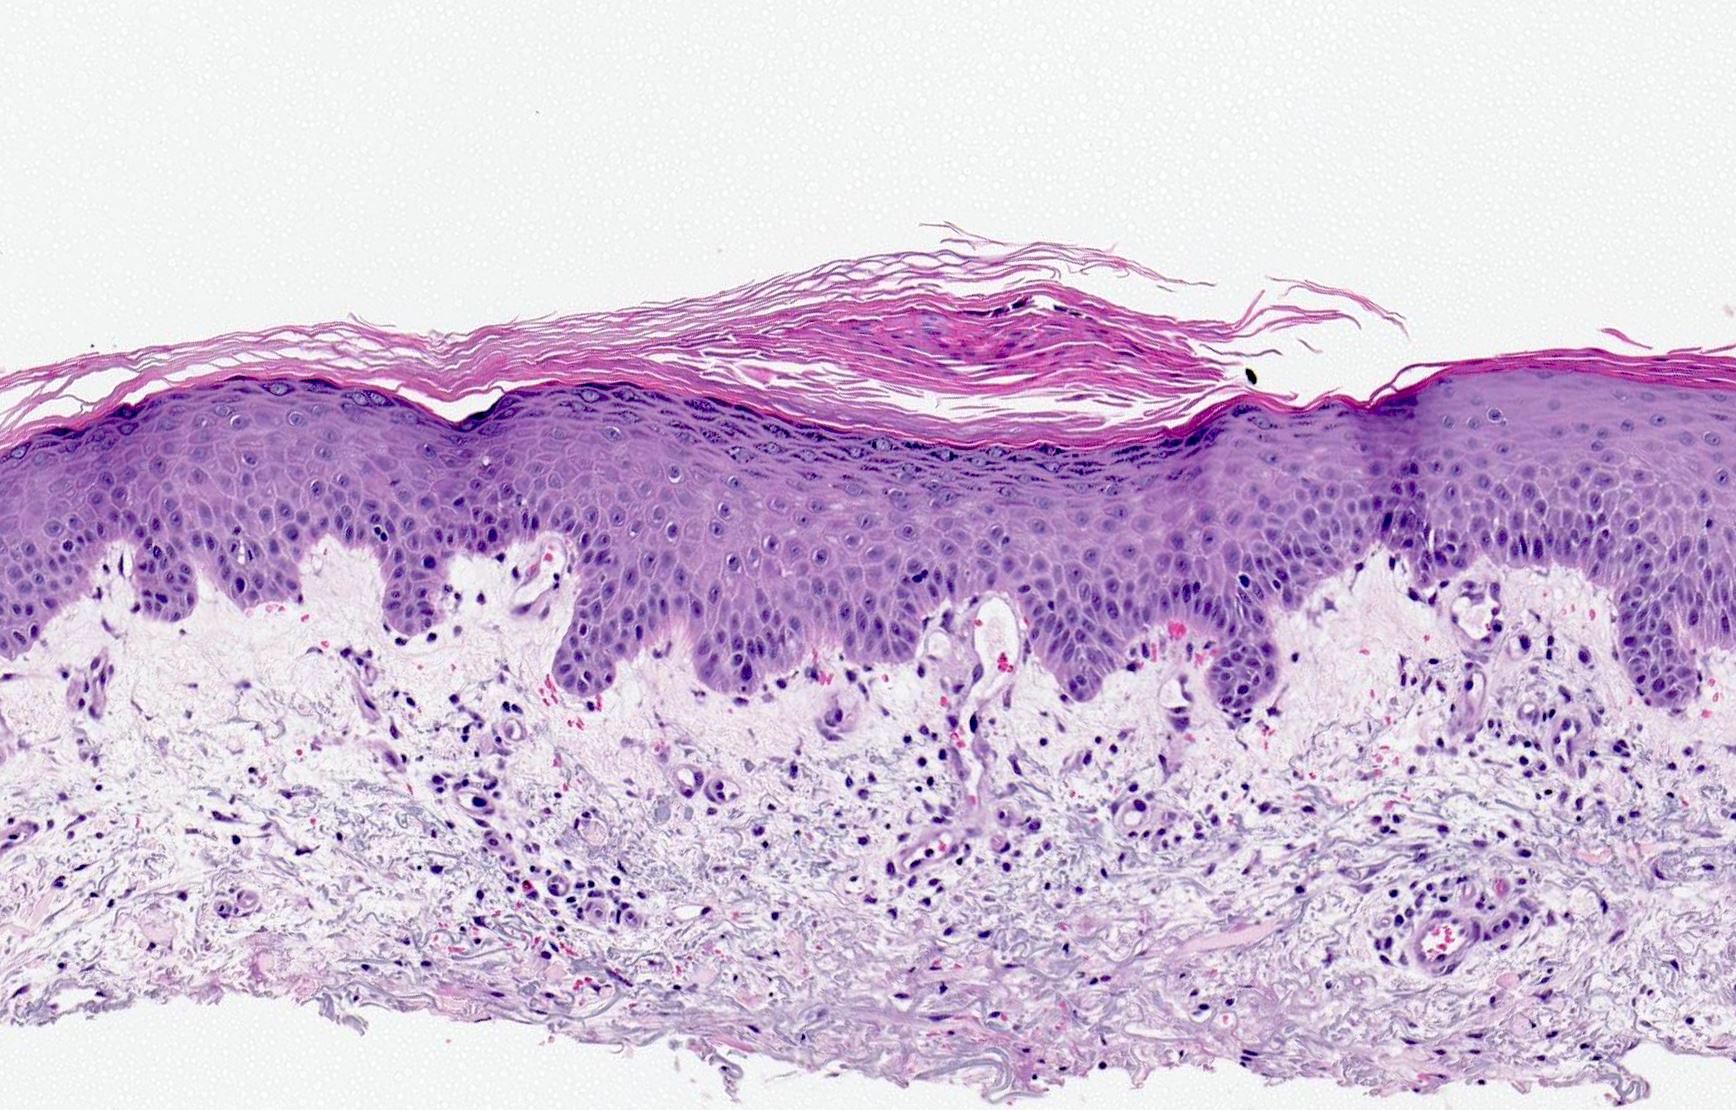 palmoplantar pustular psoriasis pathology